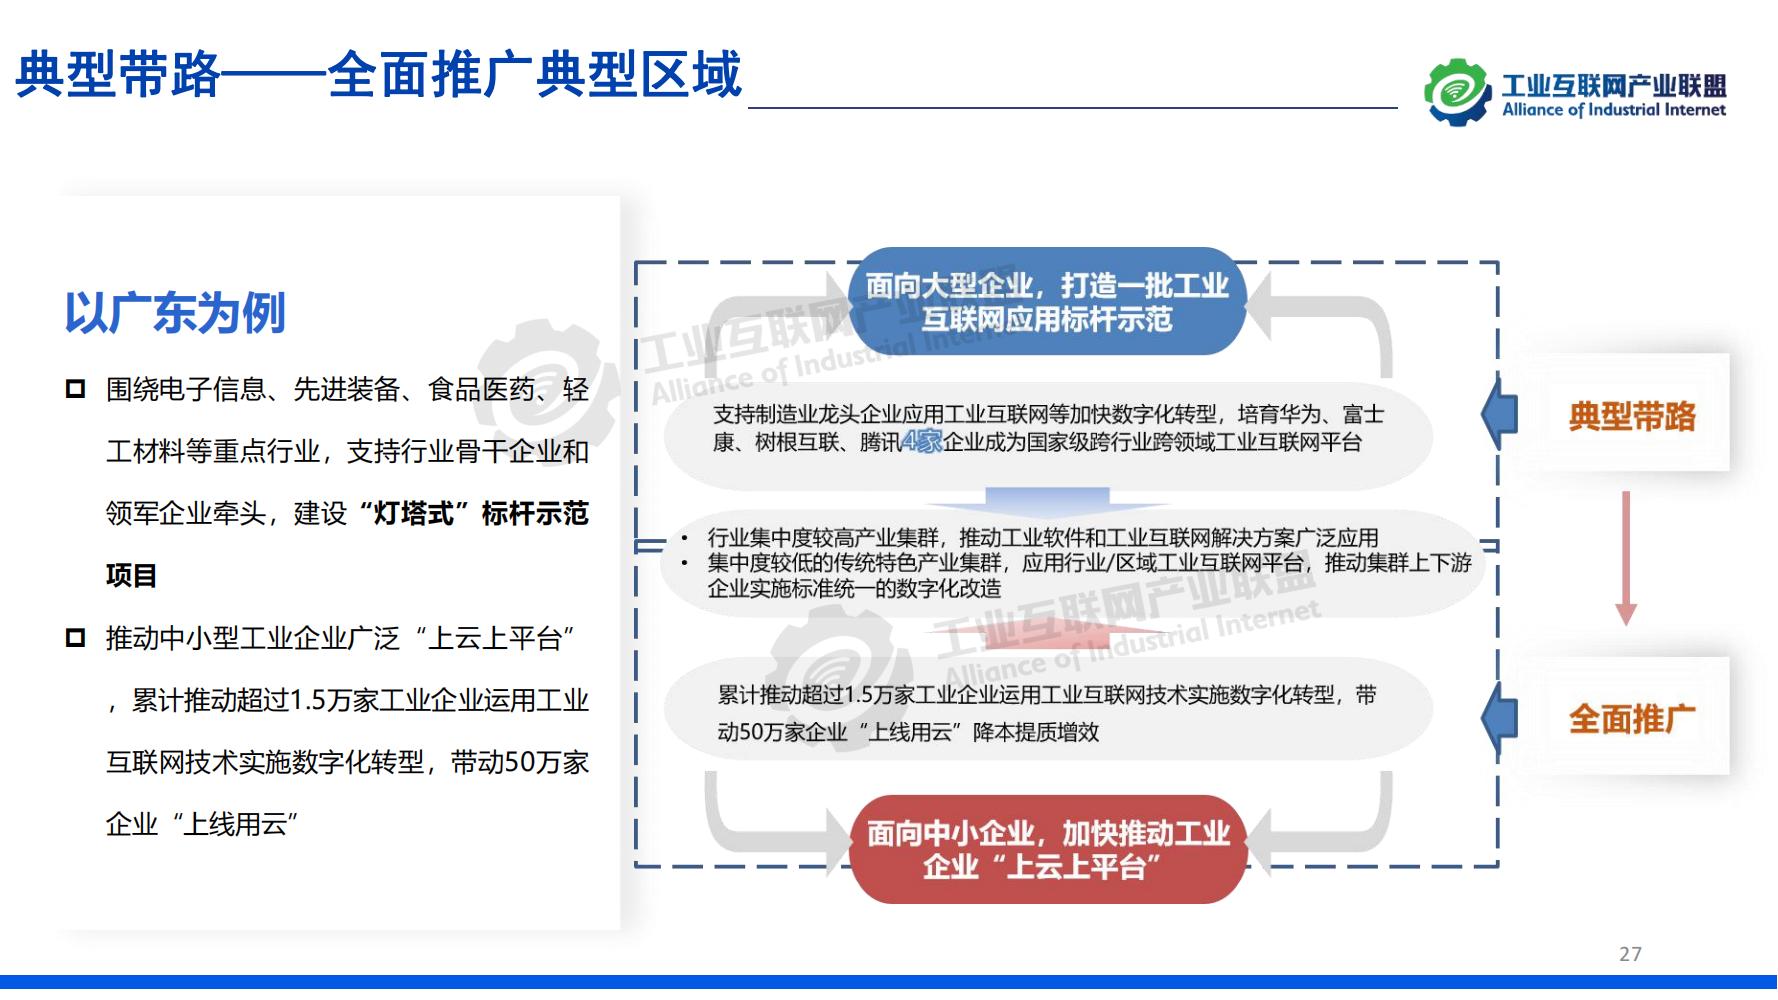 1-中国工业互联网发展成效评估报告-水印_26.jpg